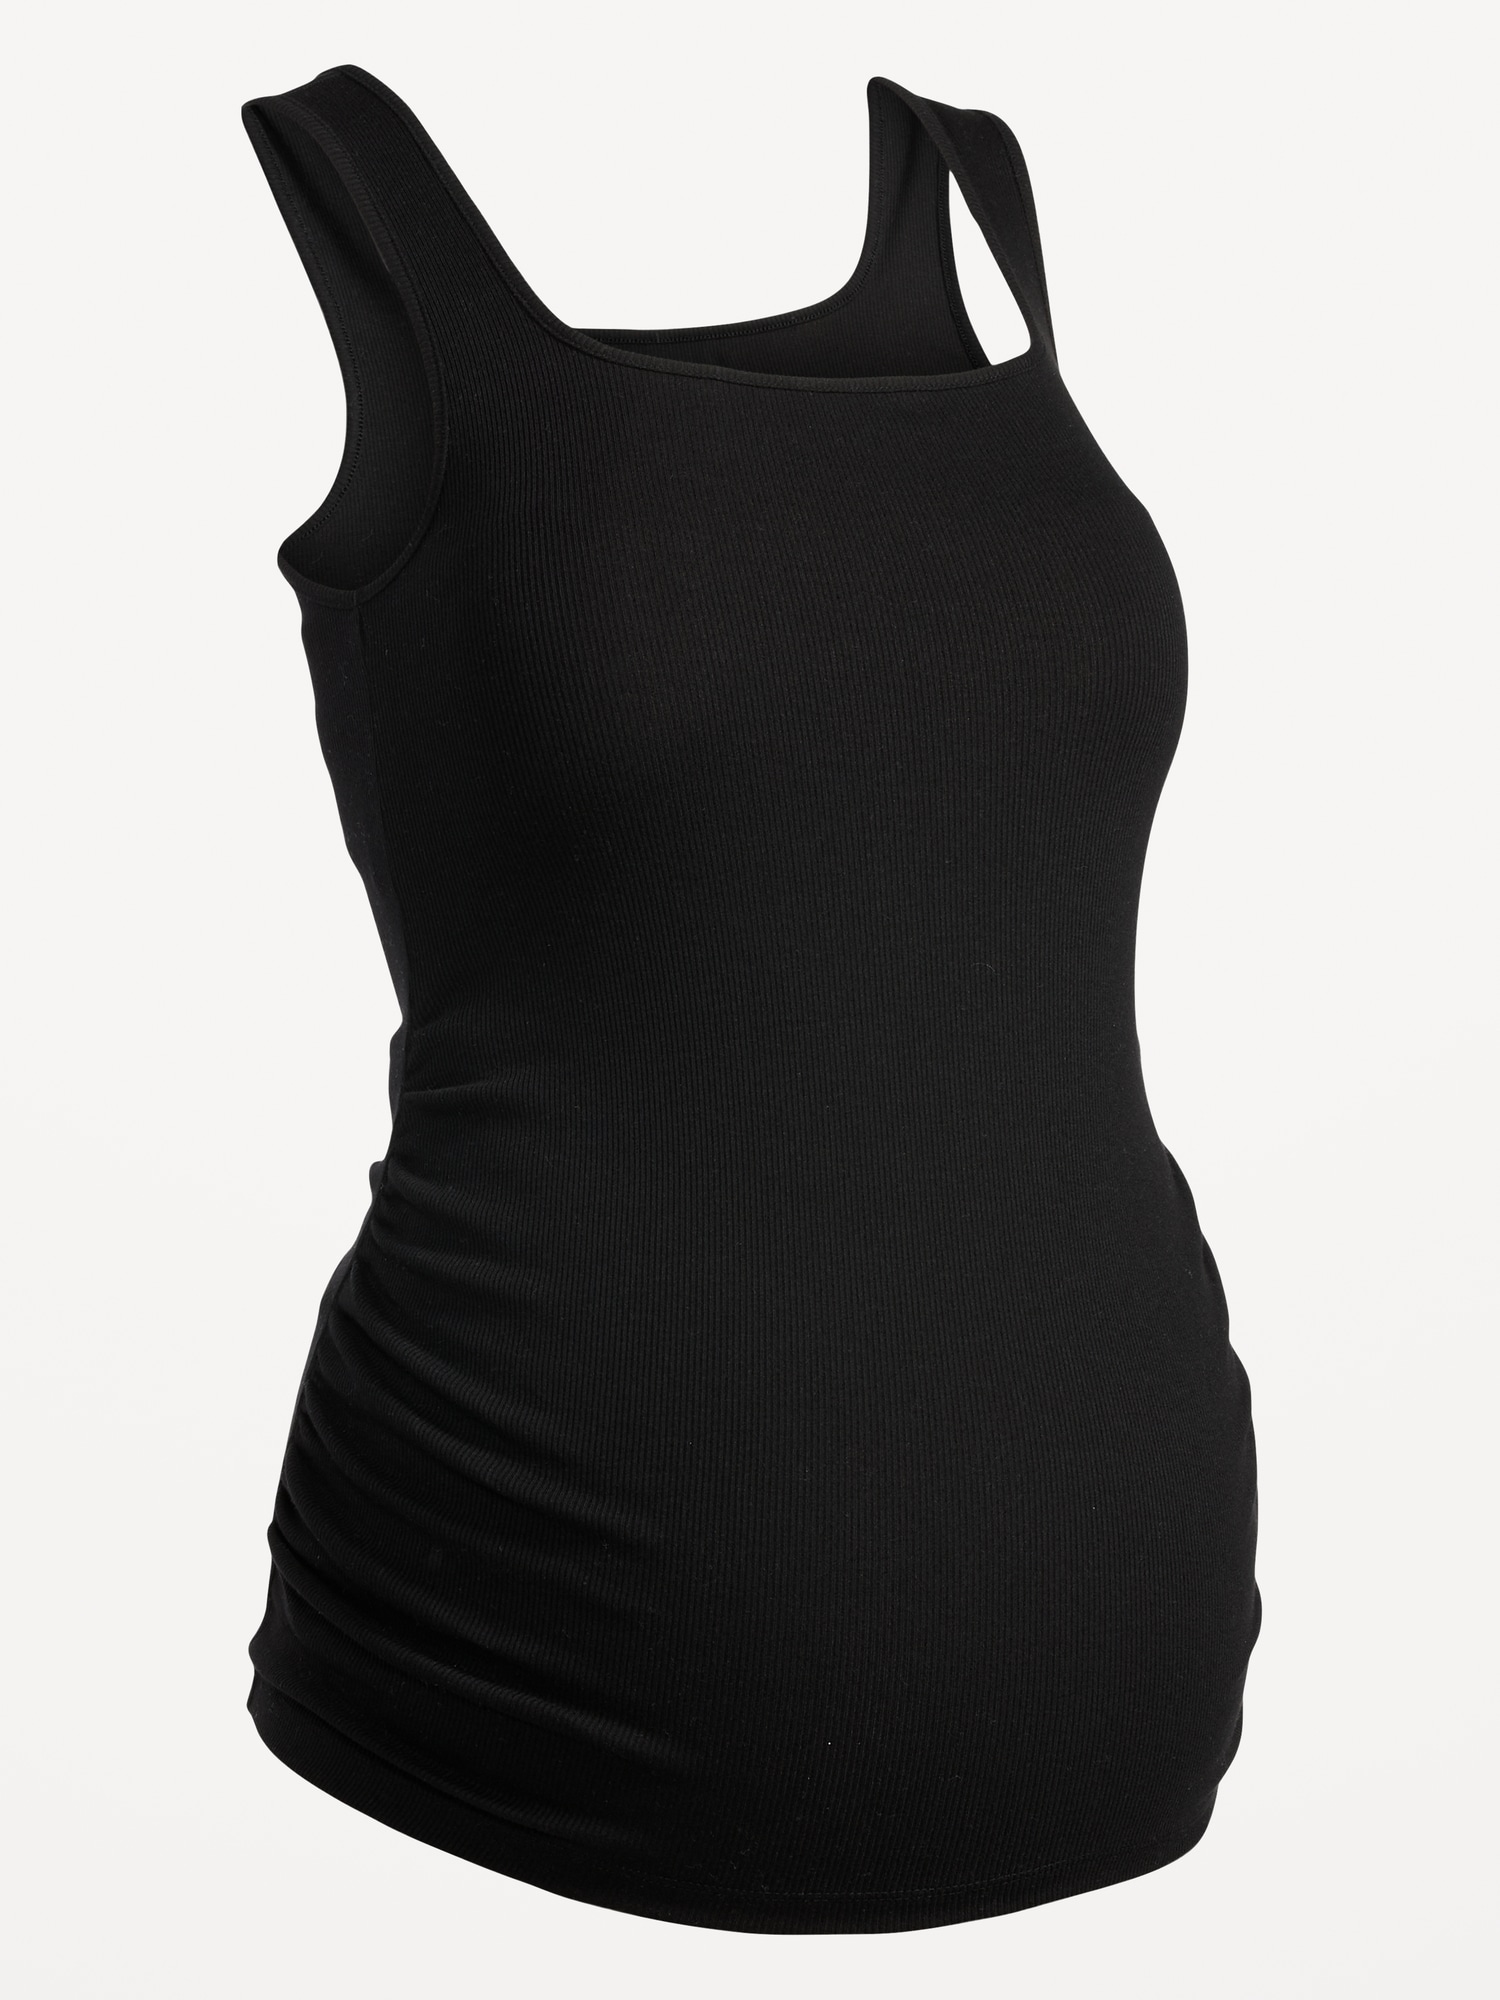 MiaBera Black and White Tank Tops for Women Plus Size Sleeveless